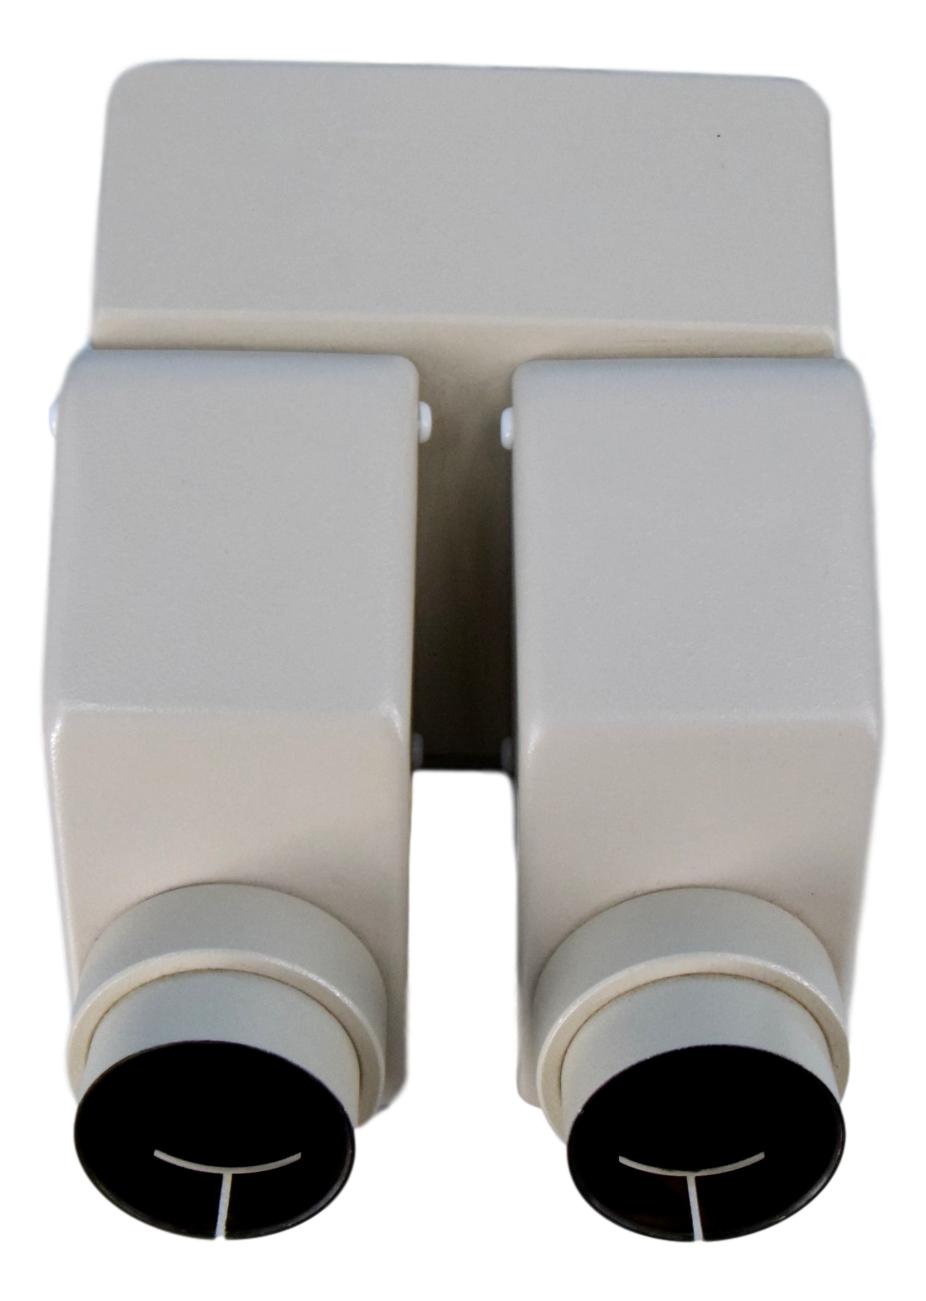 Olympus SZH-BI45N Binocular Head For SZH Microscope